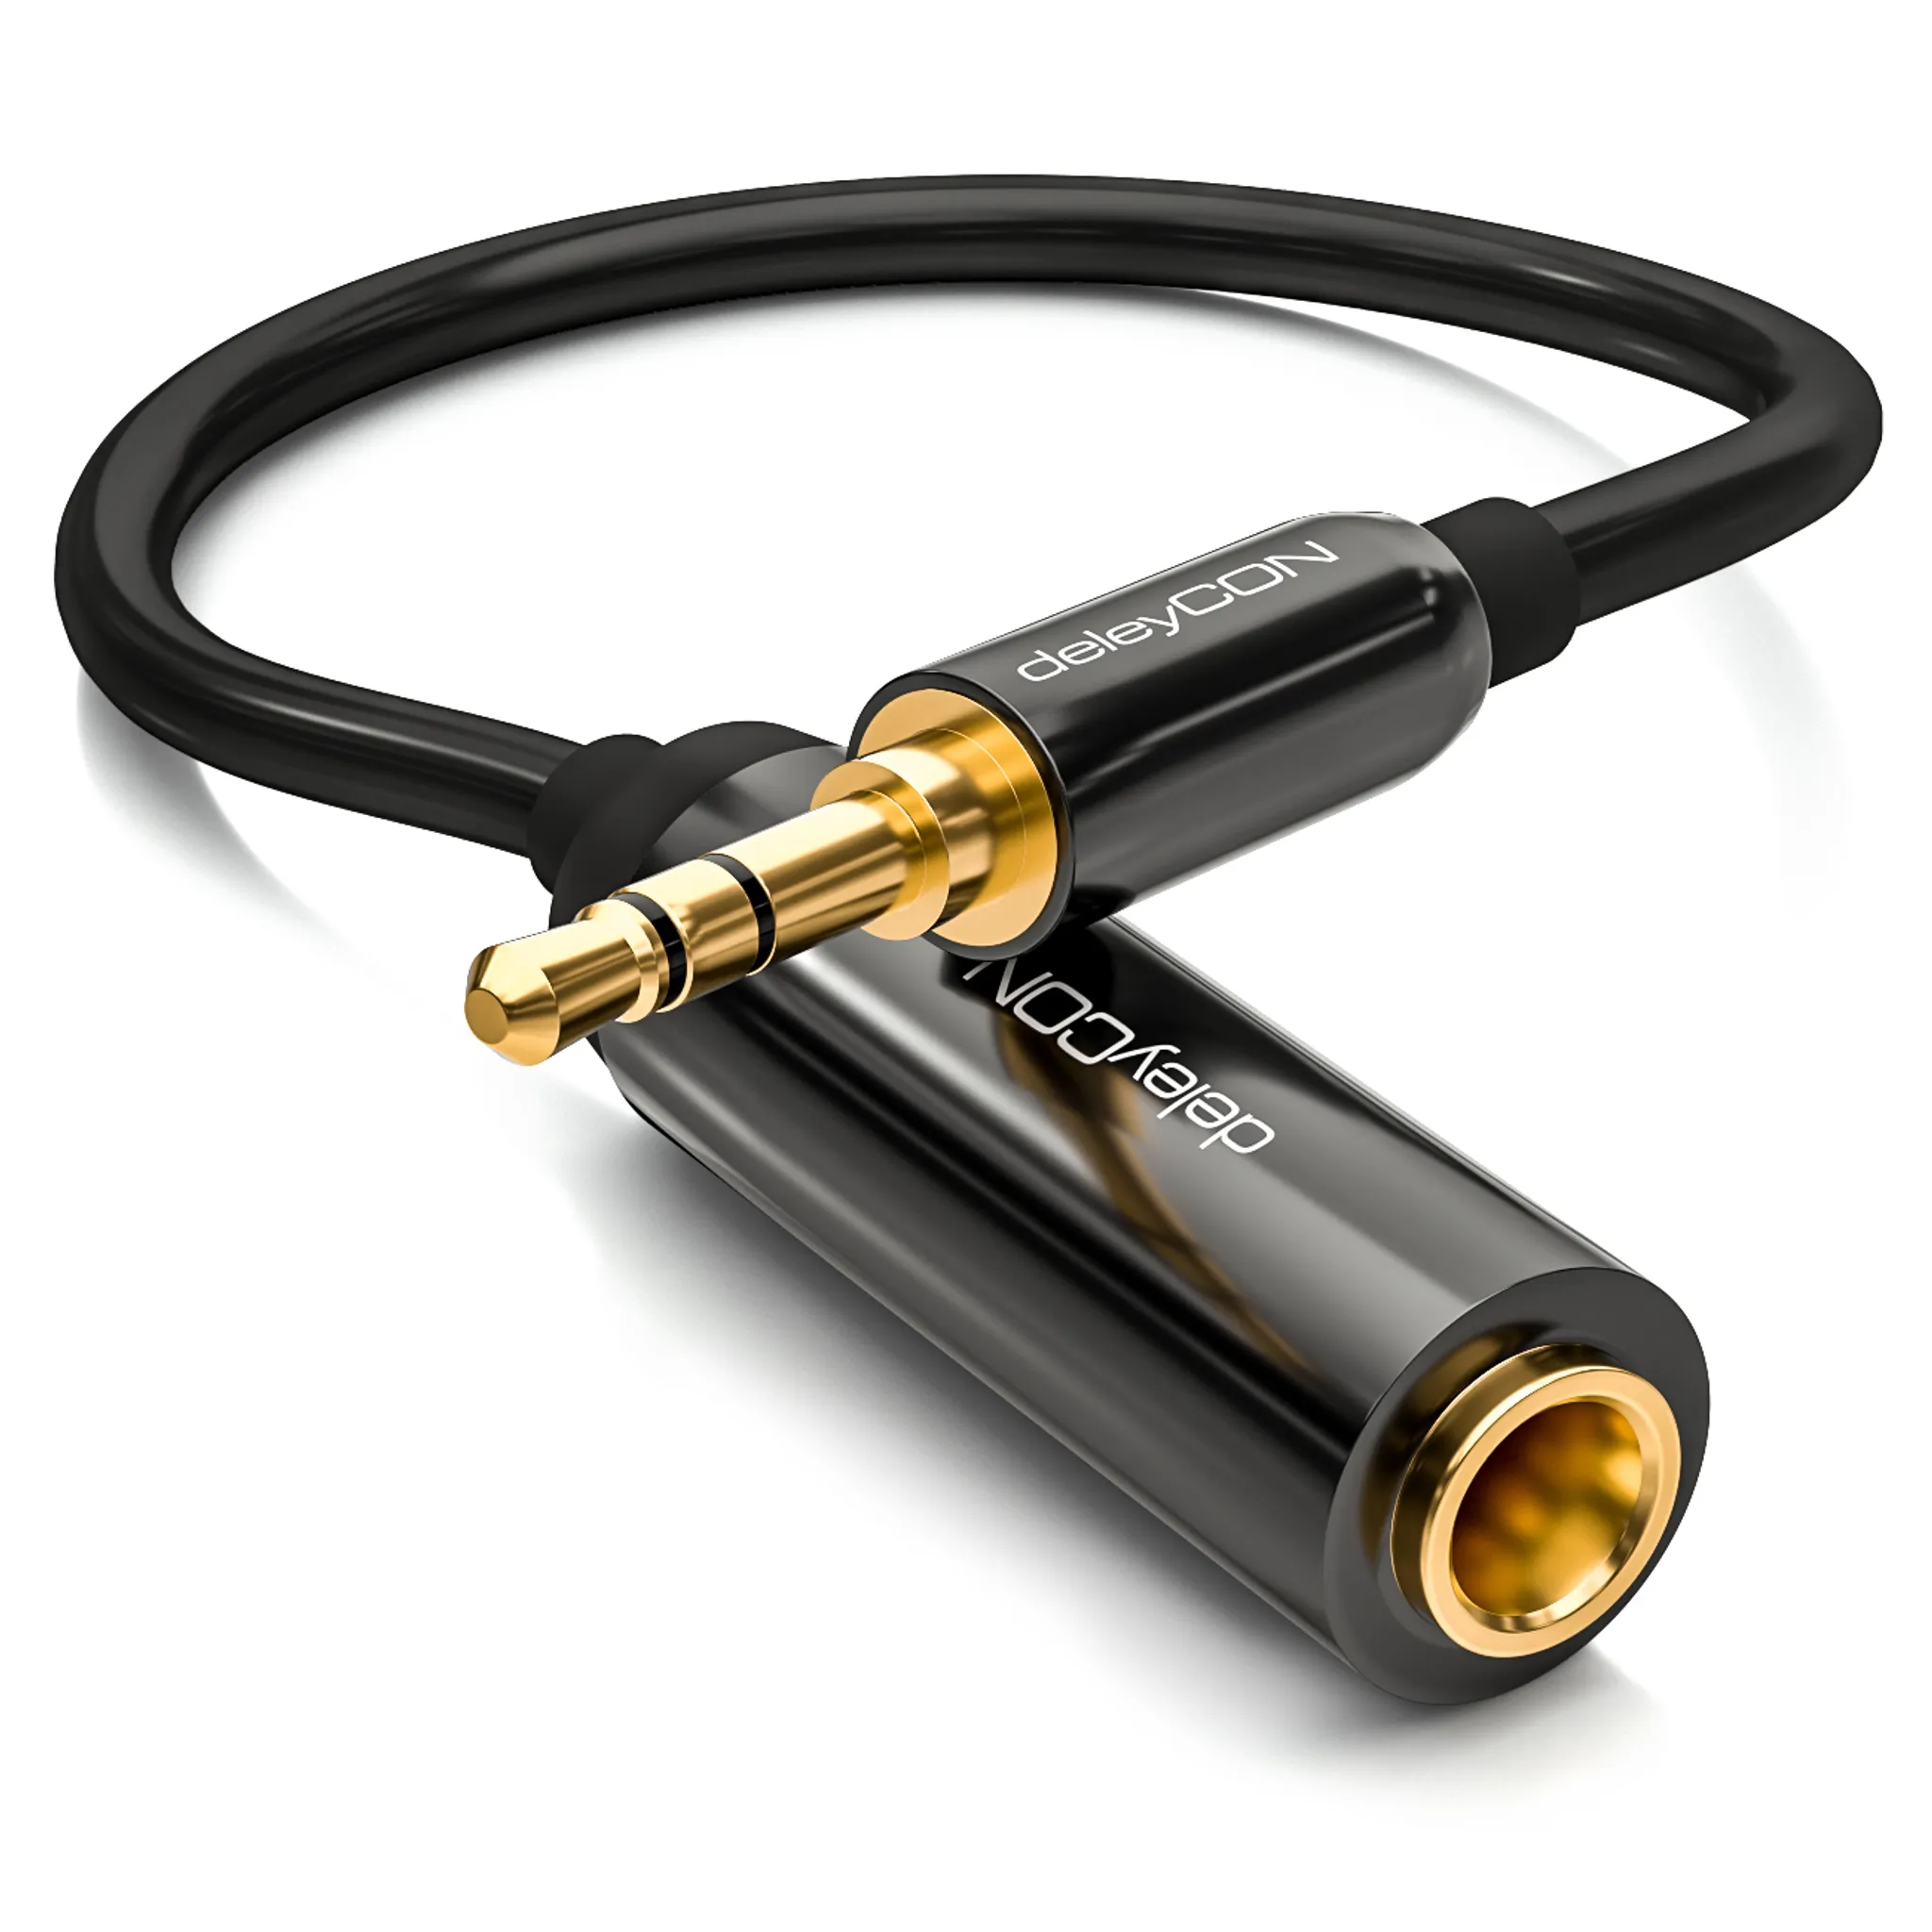 deleyCON 1x 3,5mm Klinke Splitter Audio Stereo AUX Adapter Kabel